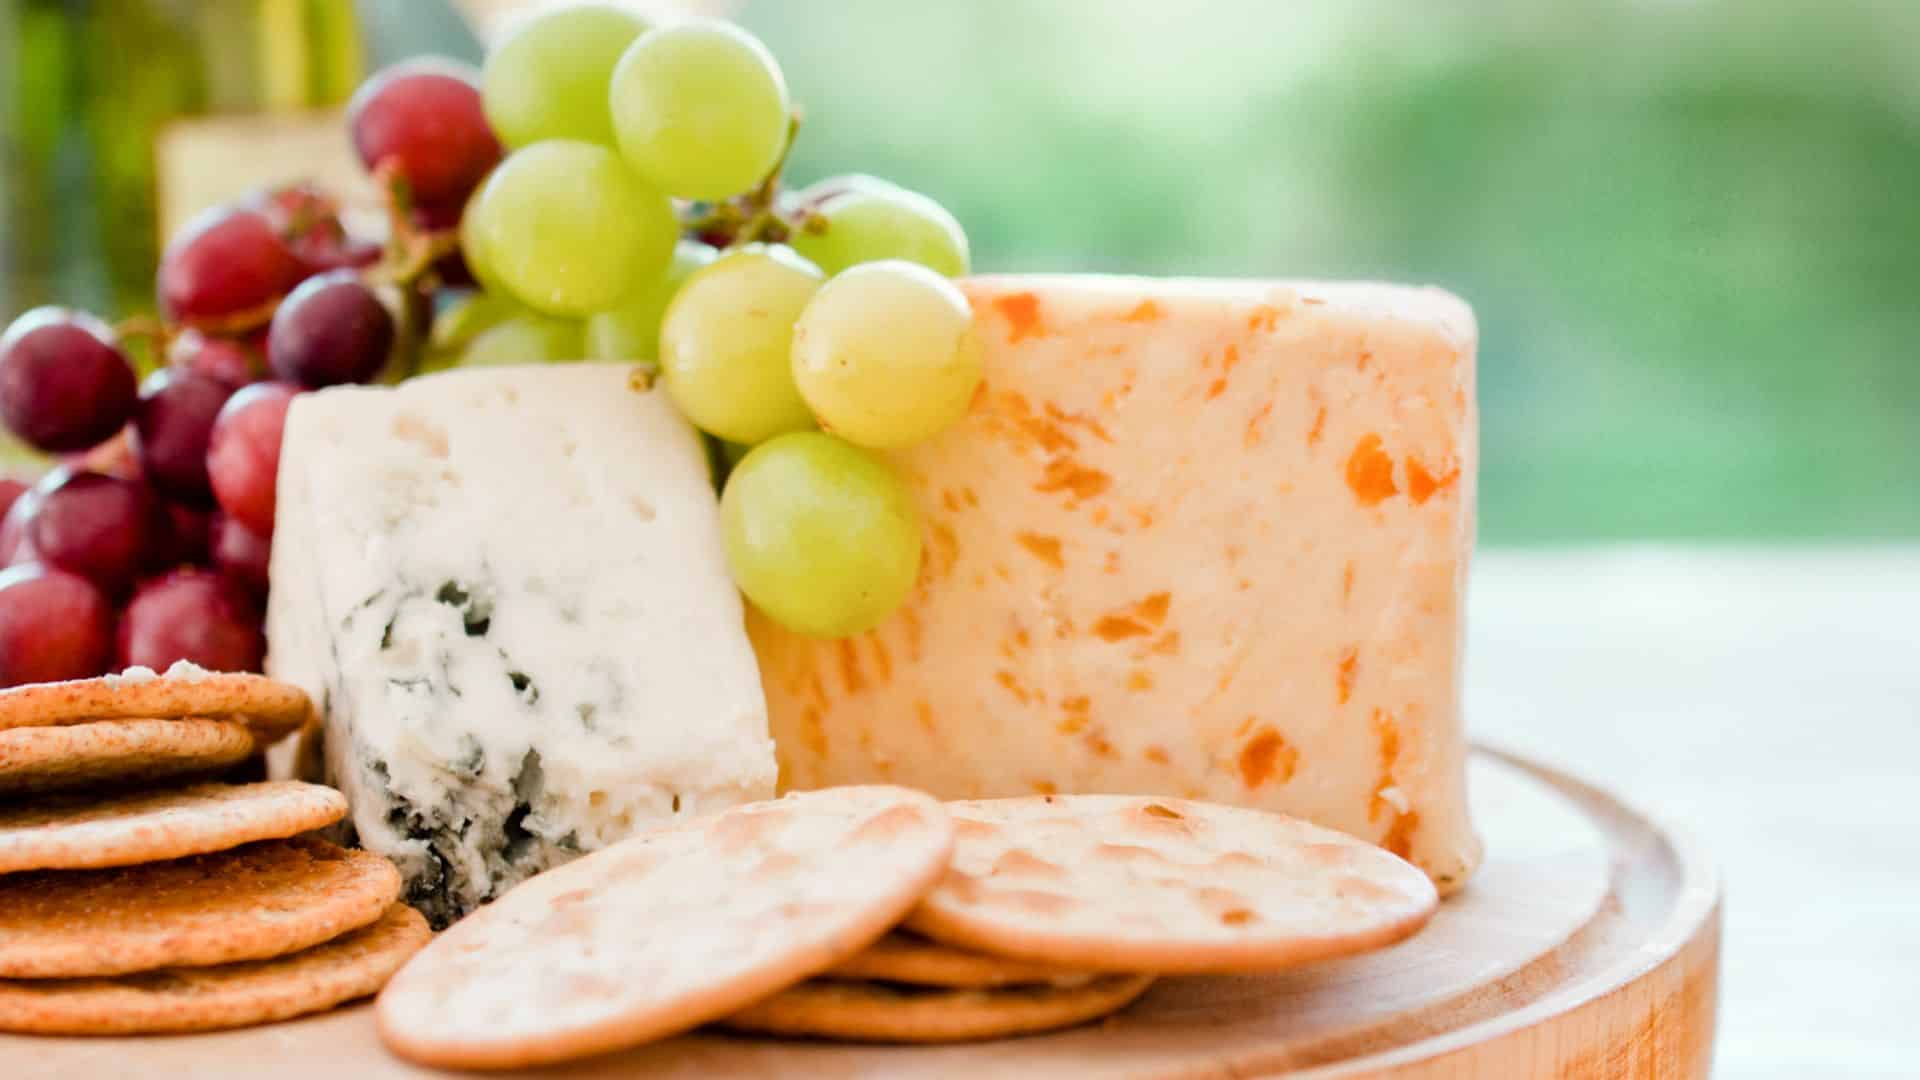 Tábua de queijos e vinhos